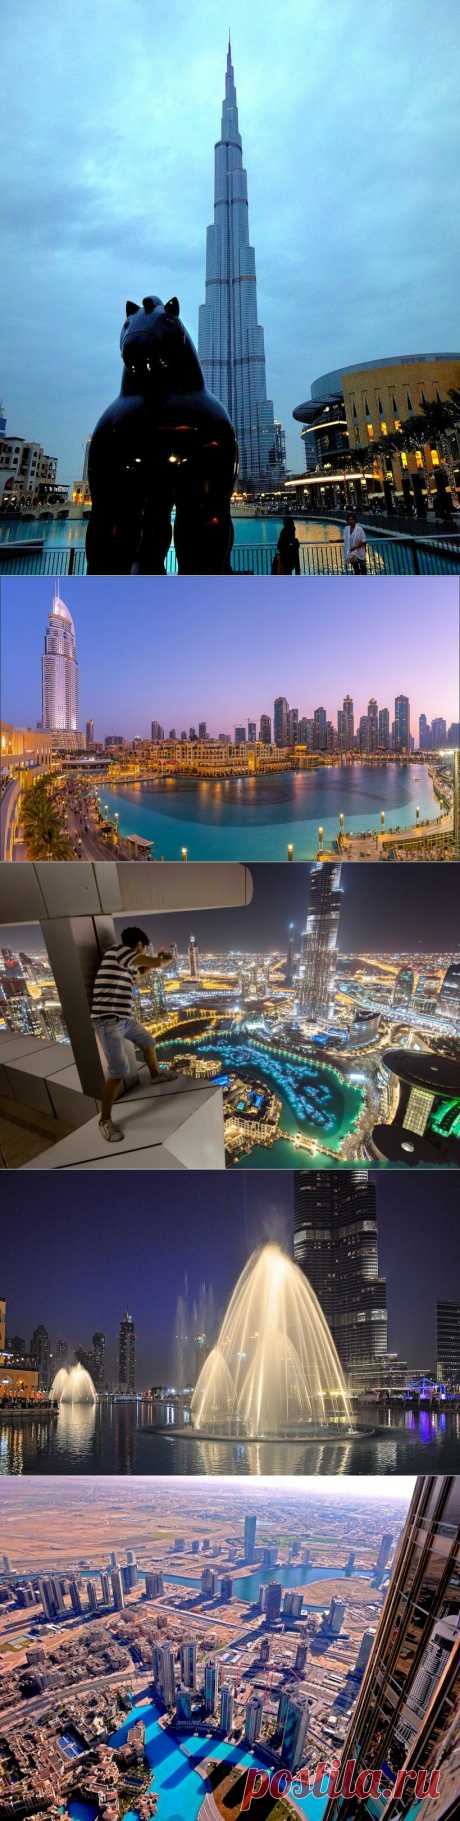 Вечерняя прогулка на небеса - Этот безумно прекрасный мир . Взгляд на Дубай с 124 этажа, илибашня Халифа